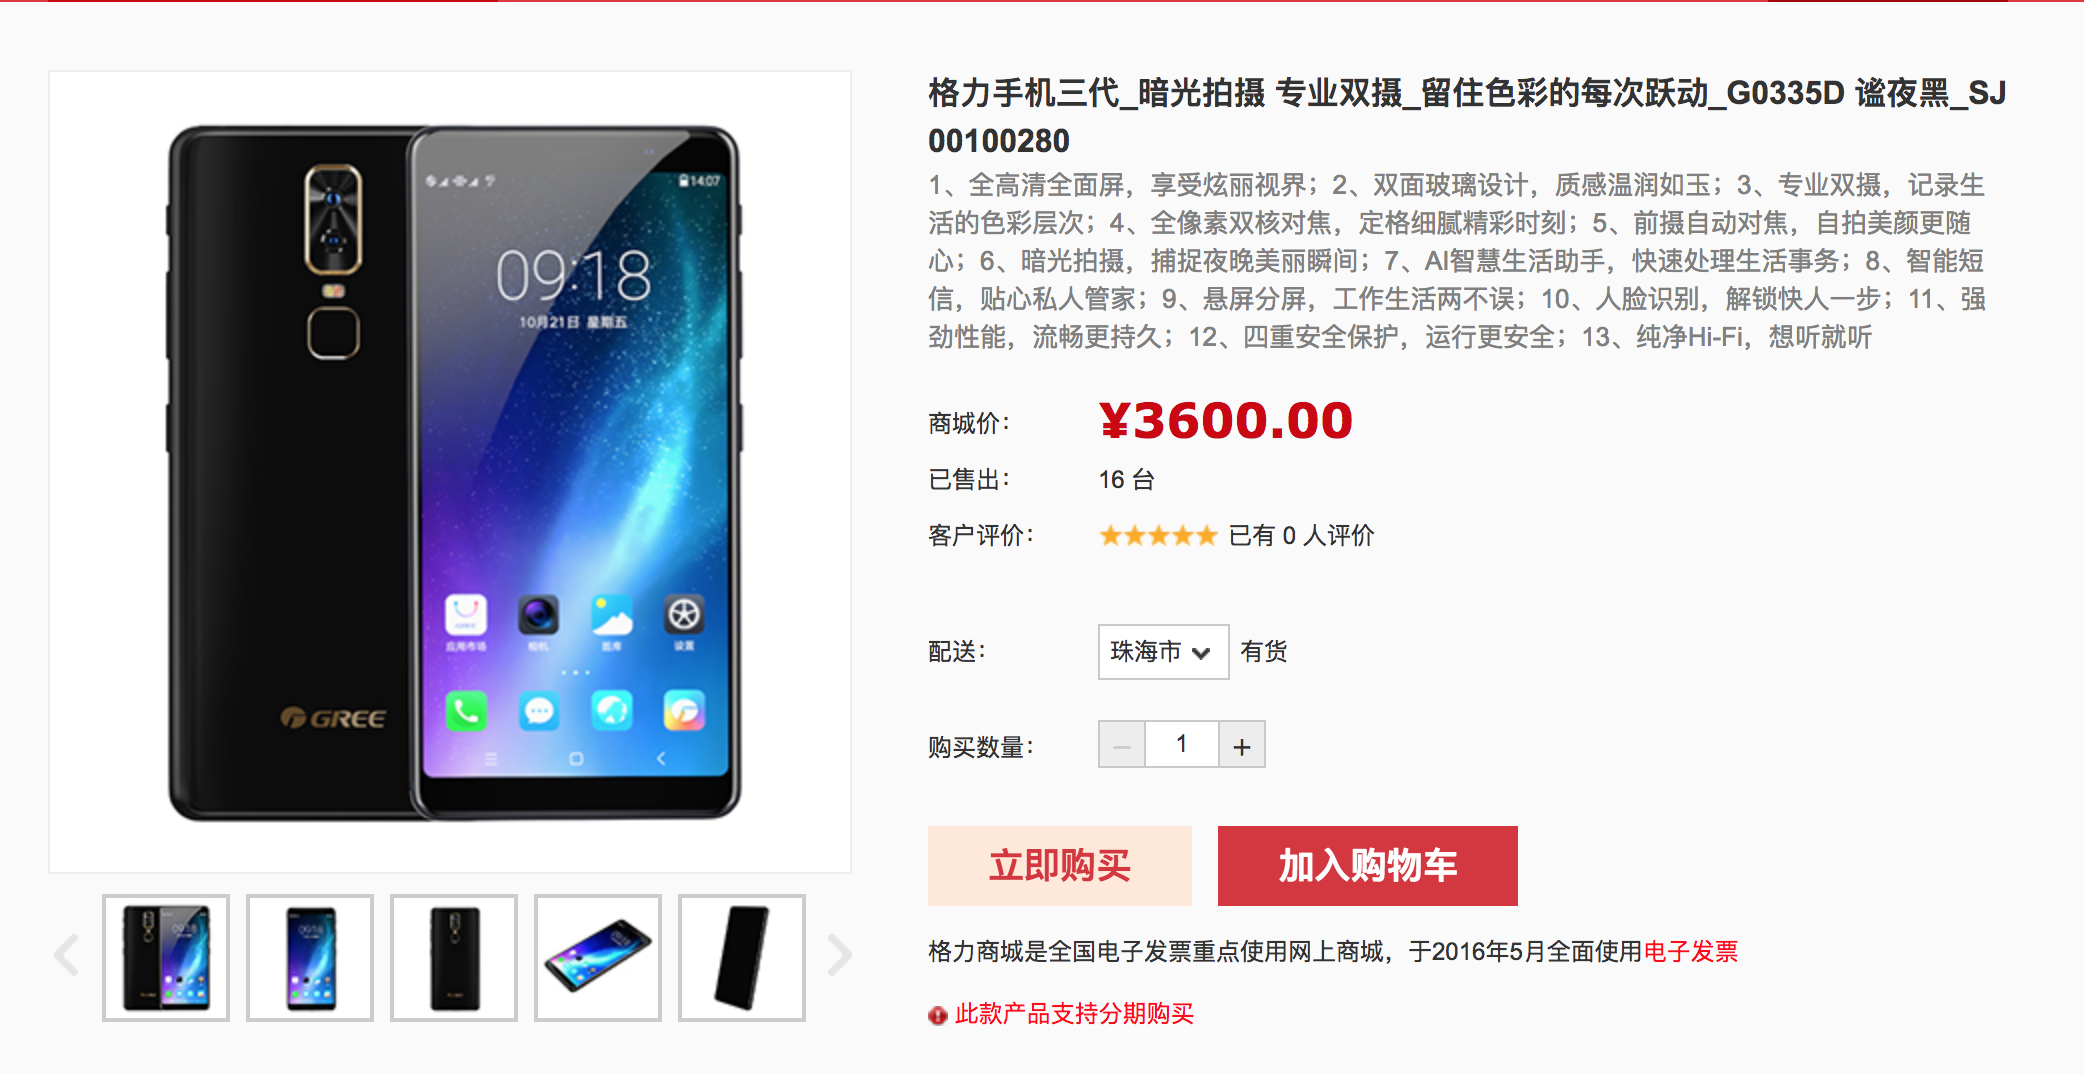 格力手机三代上线一天官网卖出16台 搭载骁龙821 售价3600元